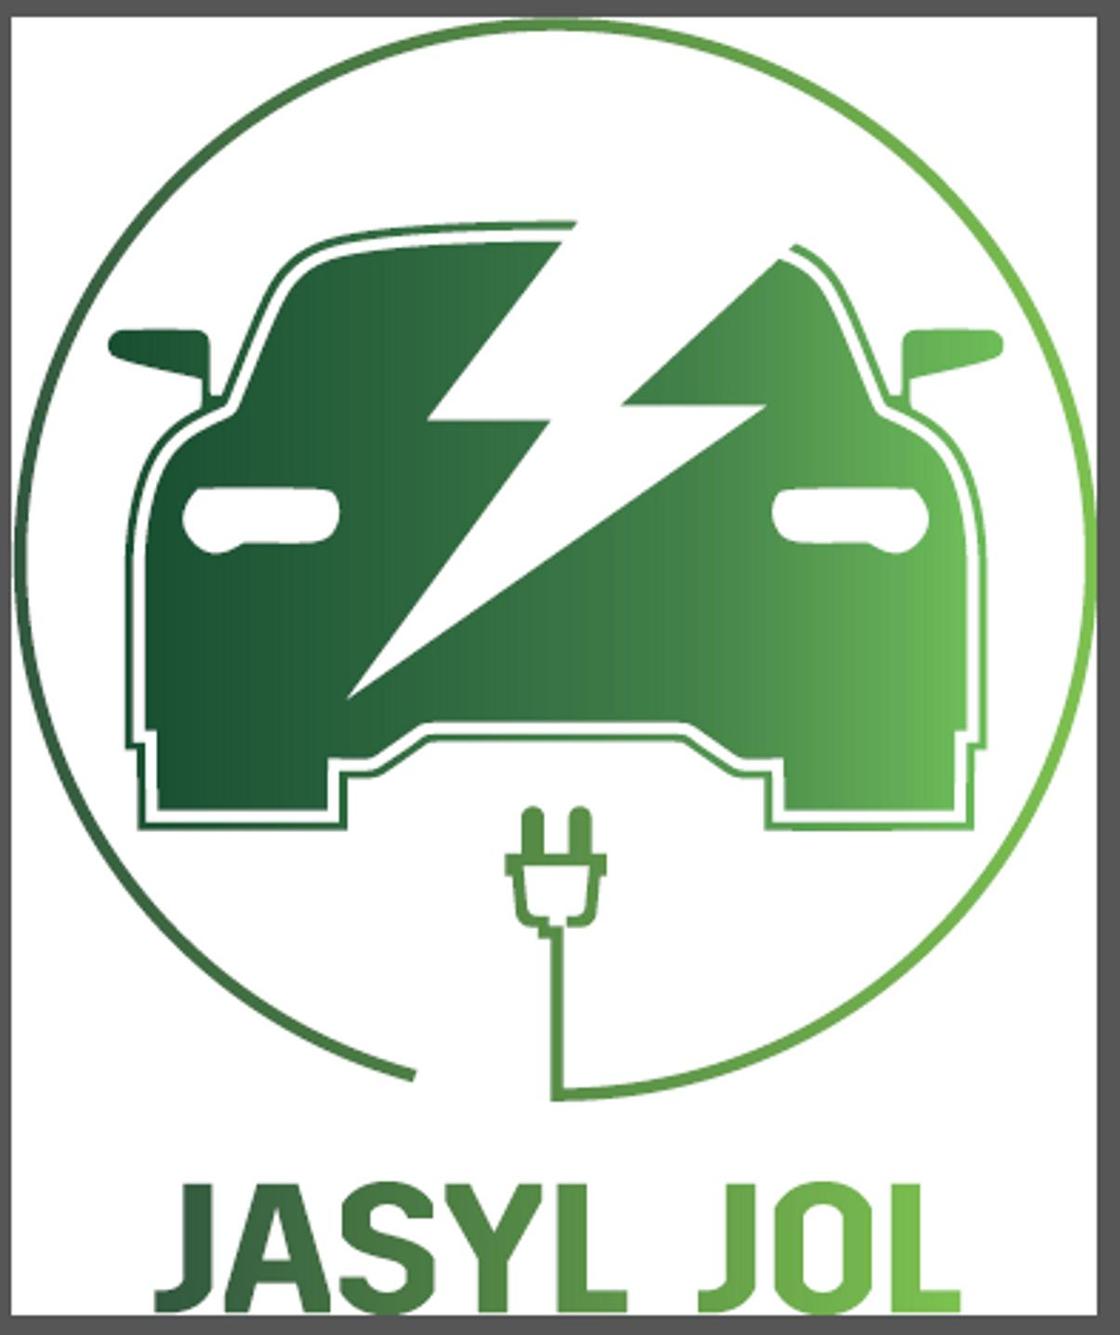 Автопробег электромобилей Jasyl Jol стартует во Всемирный день окружающей среды